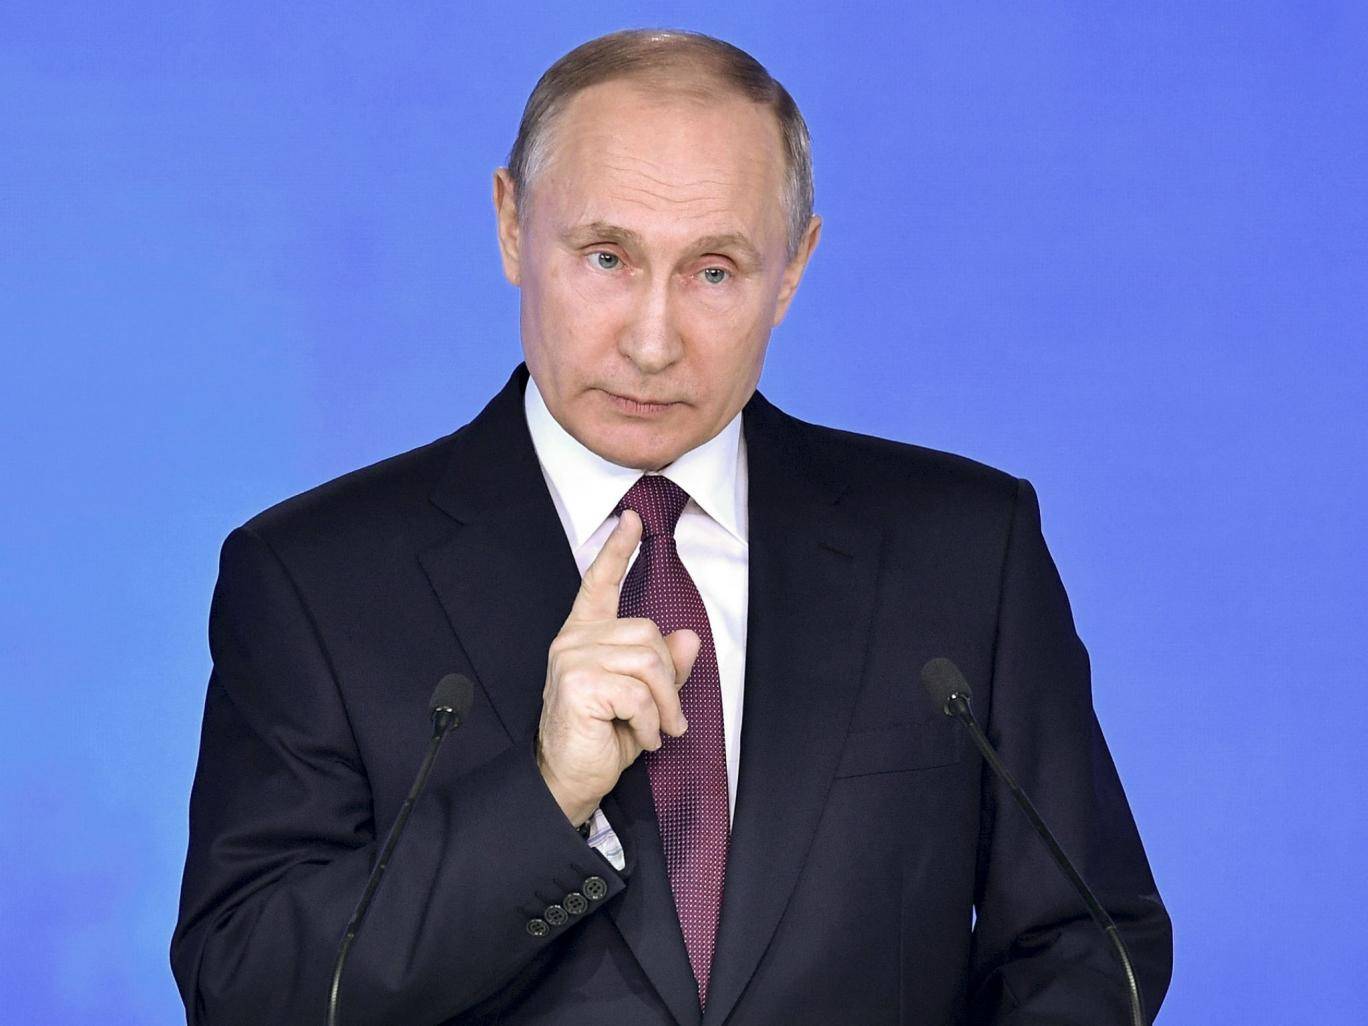 الاندبندنت: بوتين وجه رسالة واضحة القوام والتفاصيل وهي أن "روسيا لا تهزم عسكرياَ"